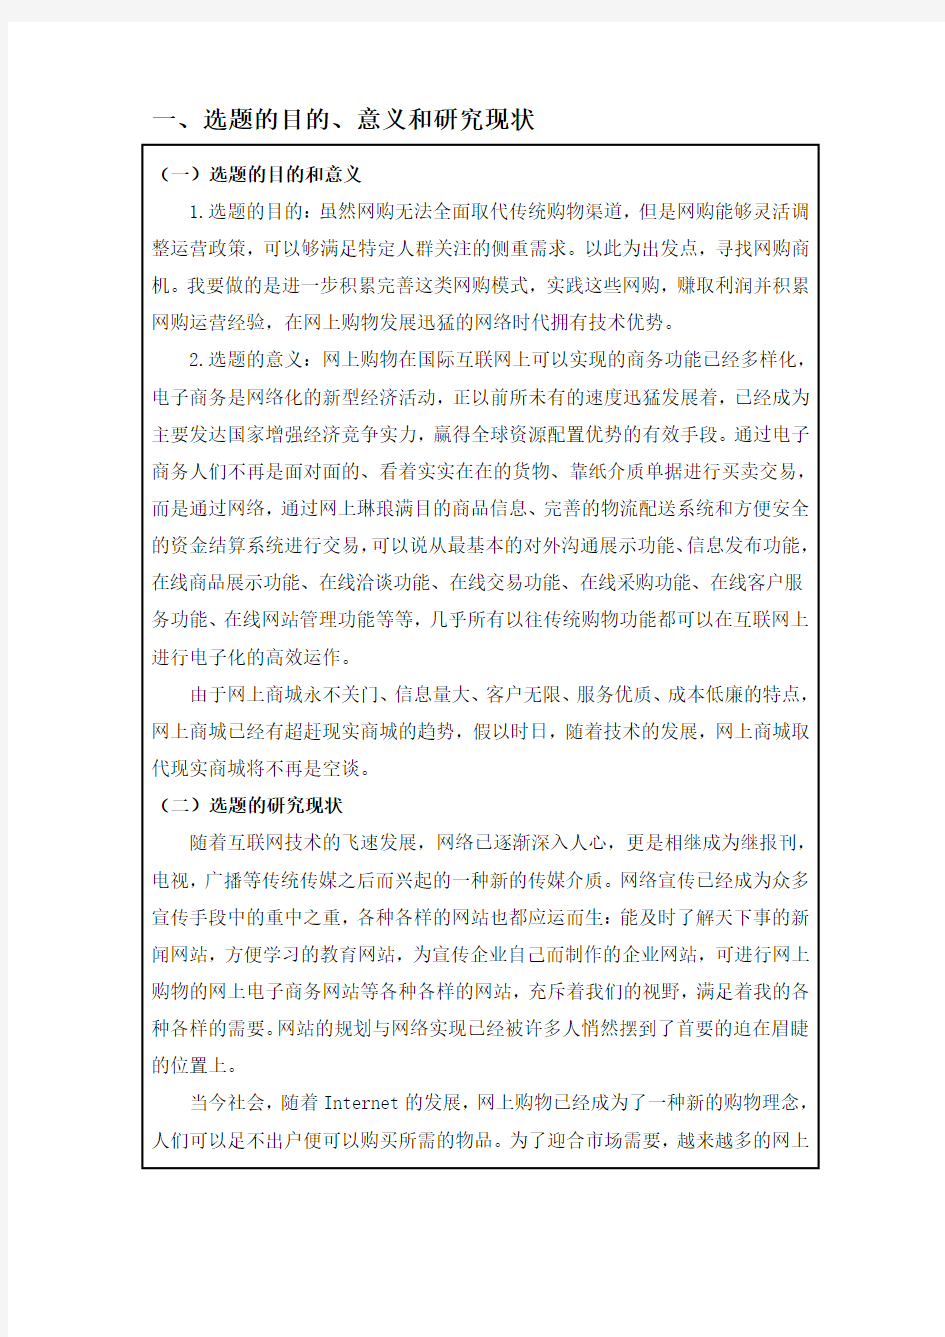 辽宁工程技术大学软件工程开题报告